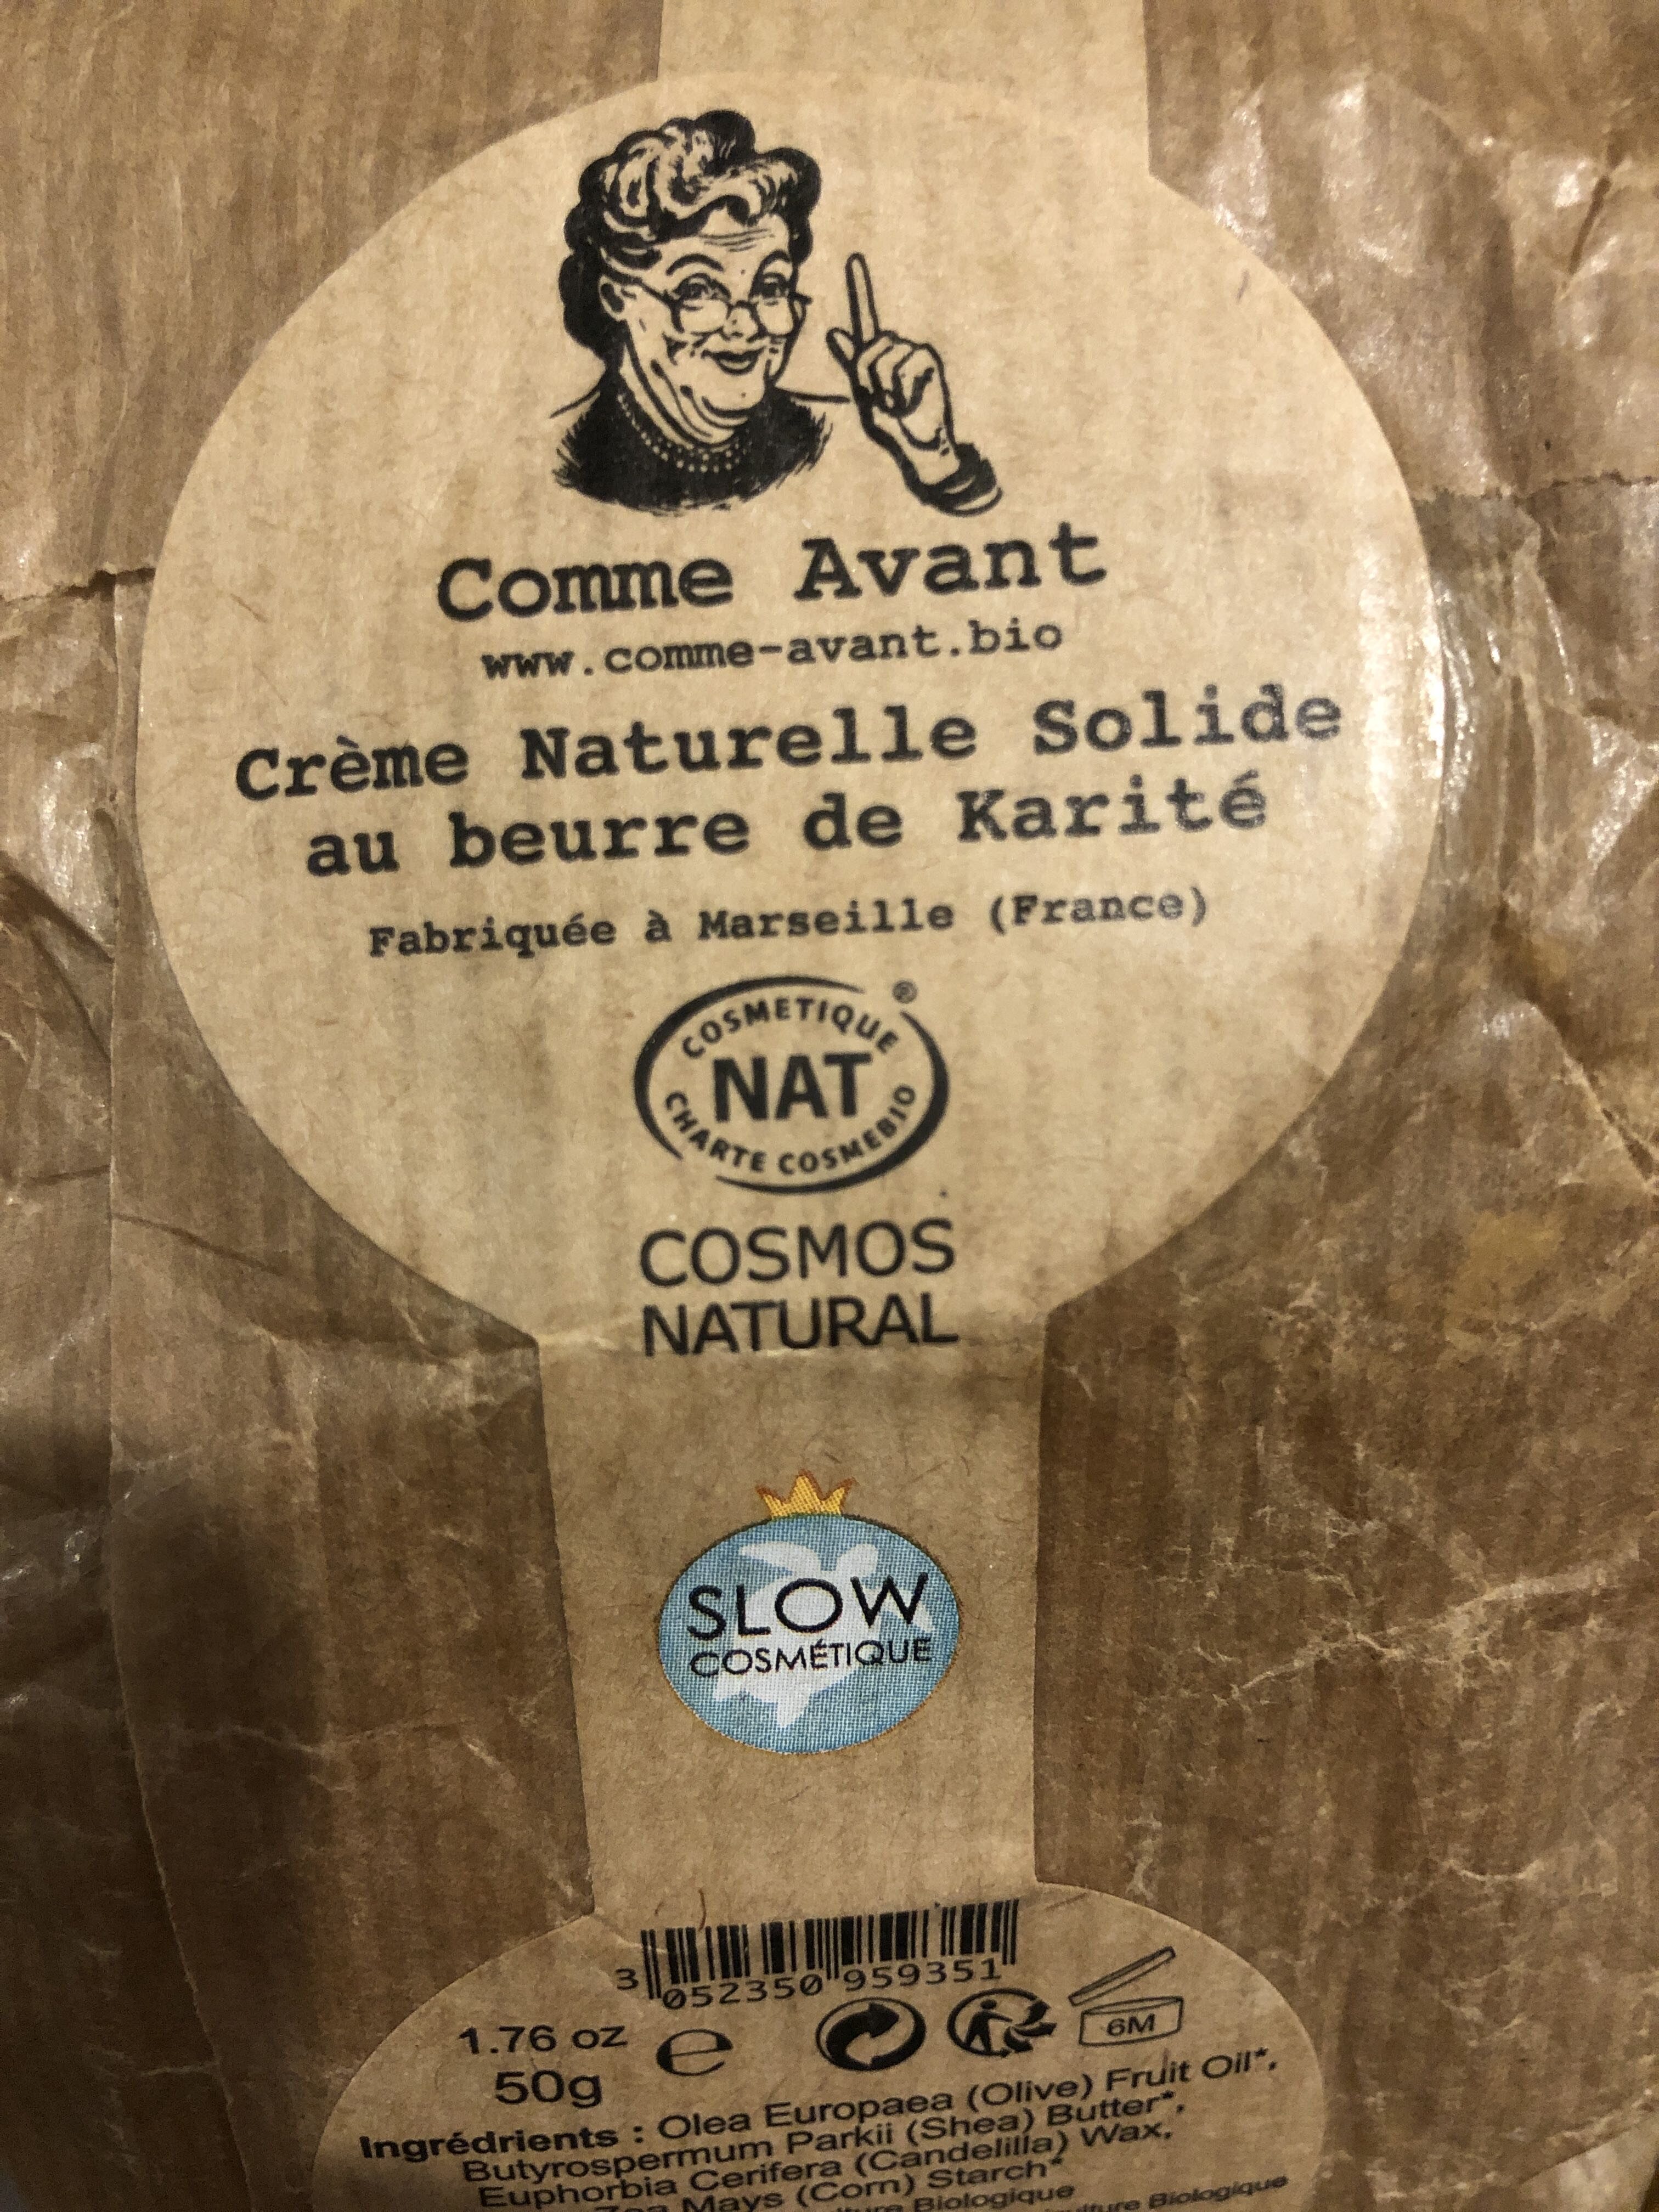 Crème naturelle solide au beurre de karite - Product - fr